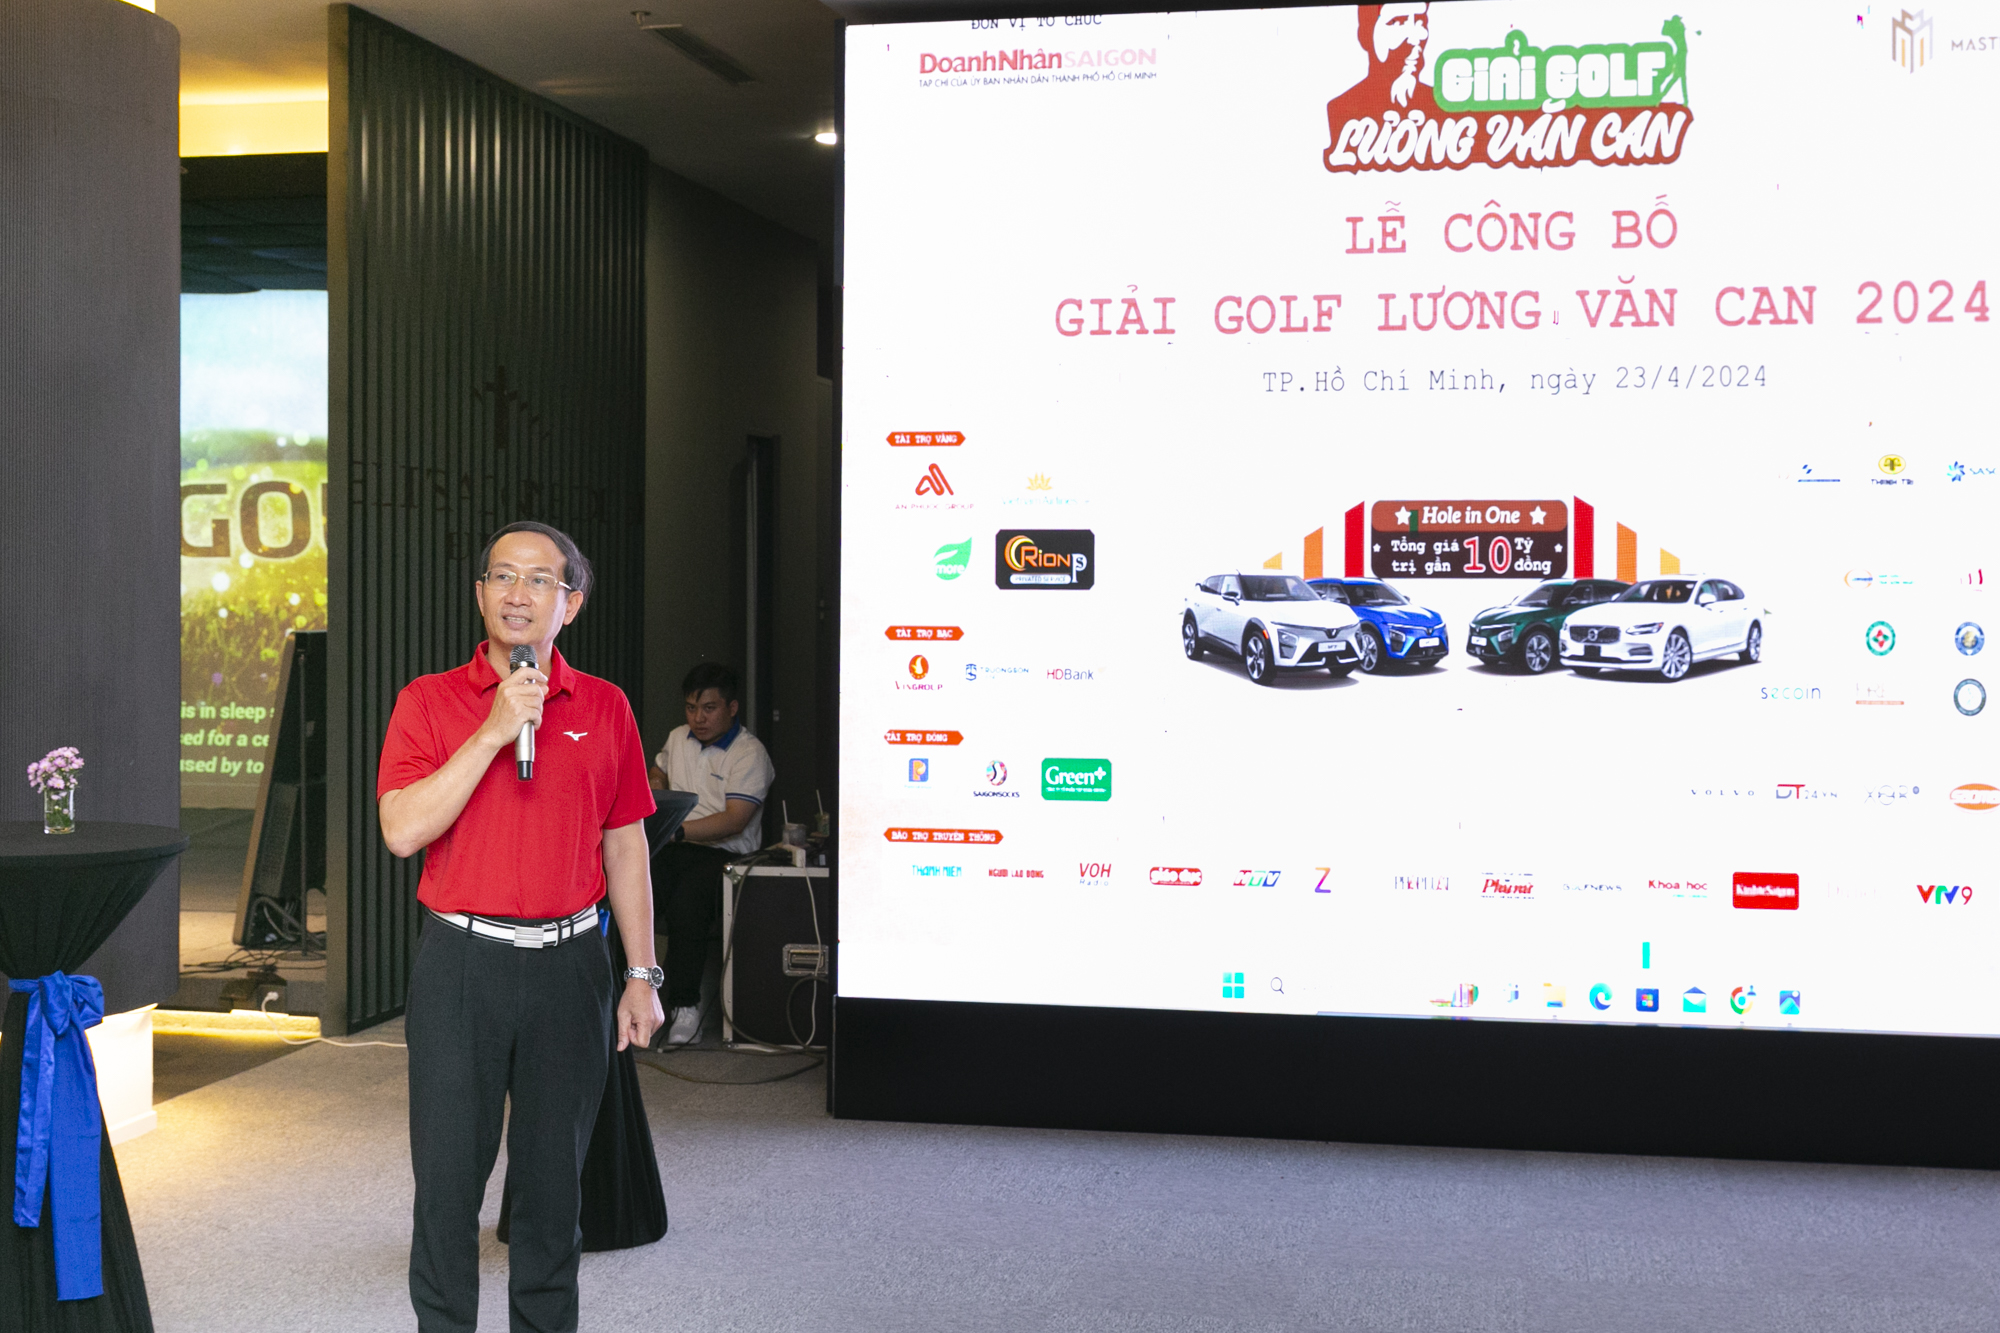 Ông Trần Hoàng - Tổng biên tập Tạp chí Doanh Nhân Sài Gòn giới thiệu về giải golf Lương Văn Can